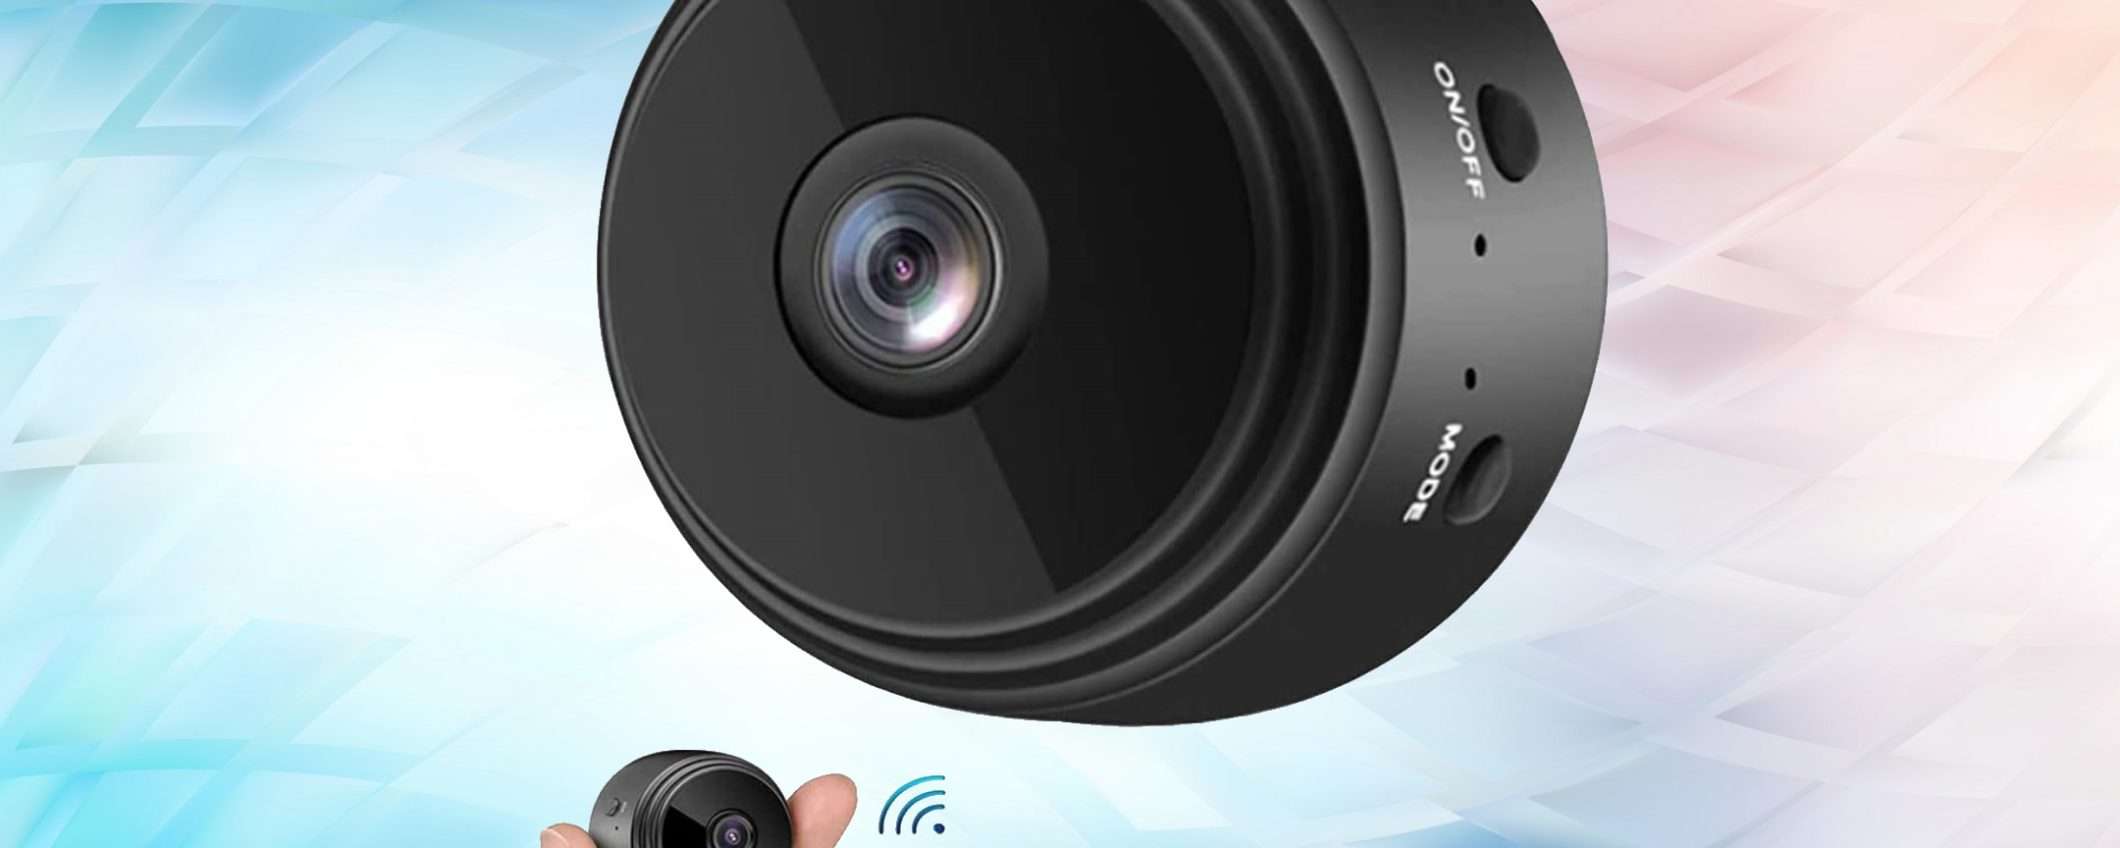 La videosorveglianza tra le tue dita con questa microcamera